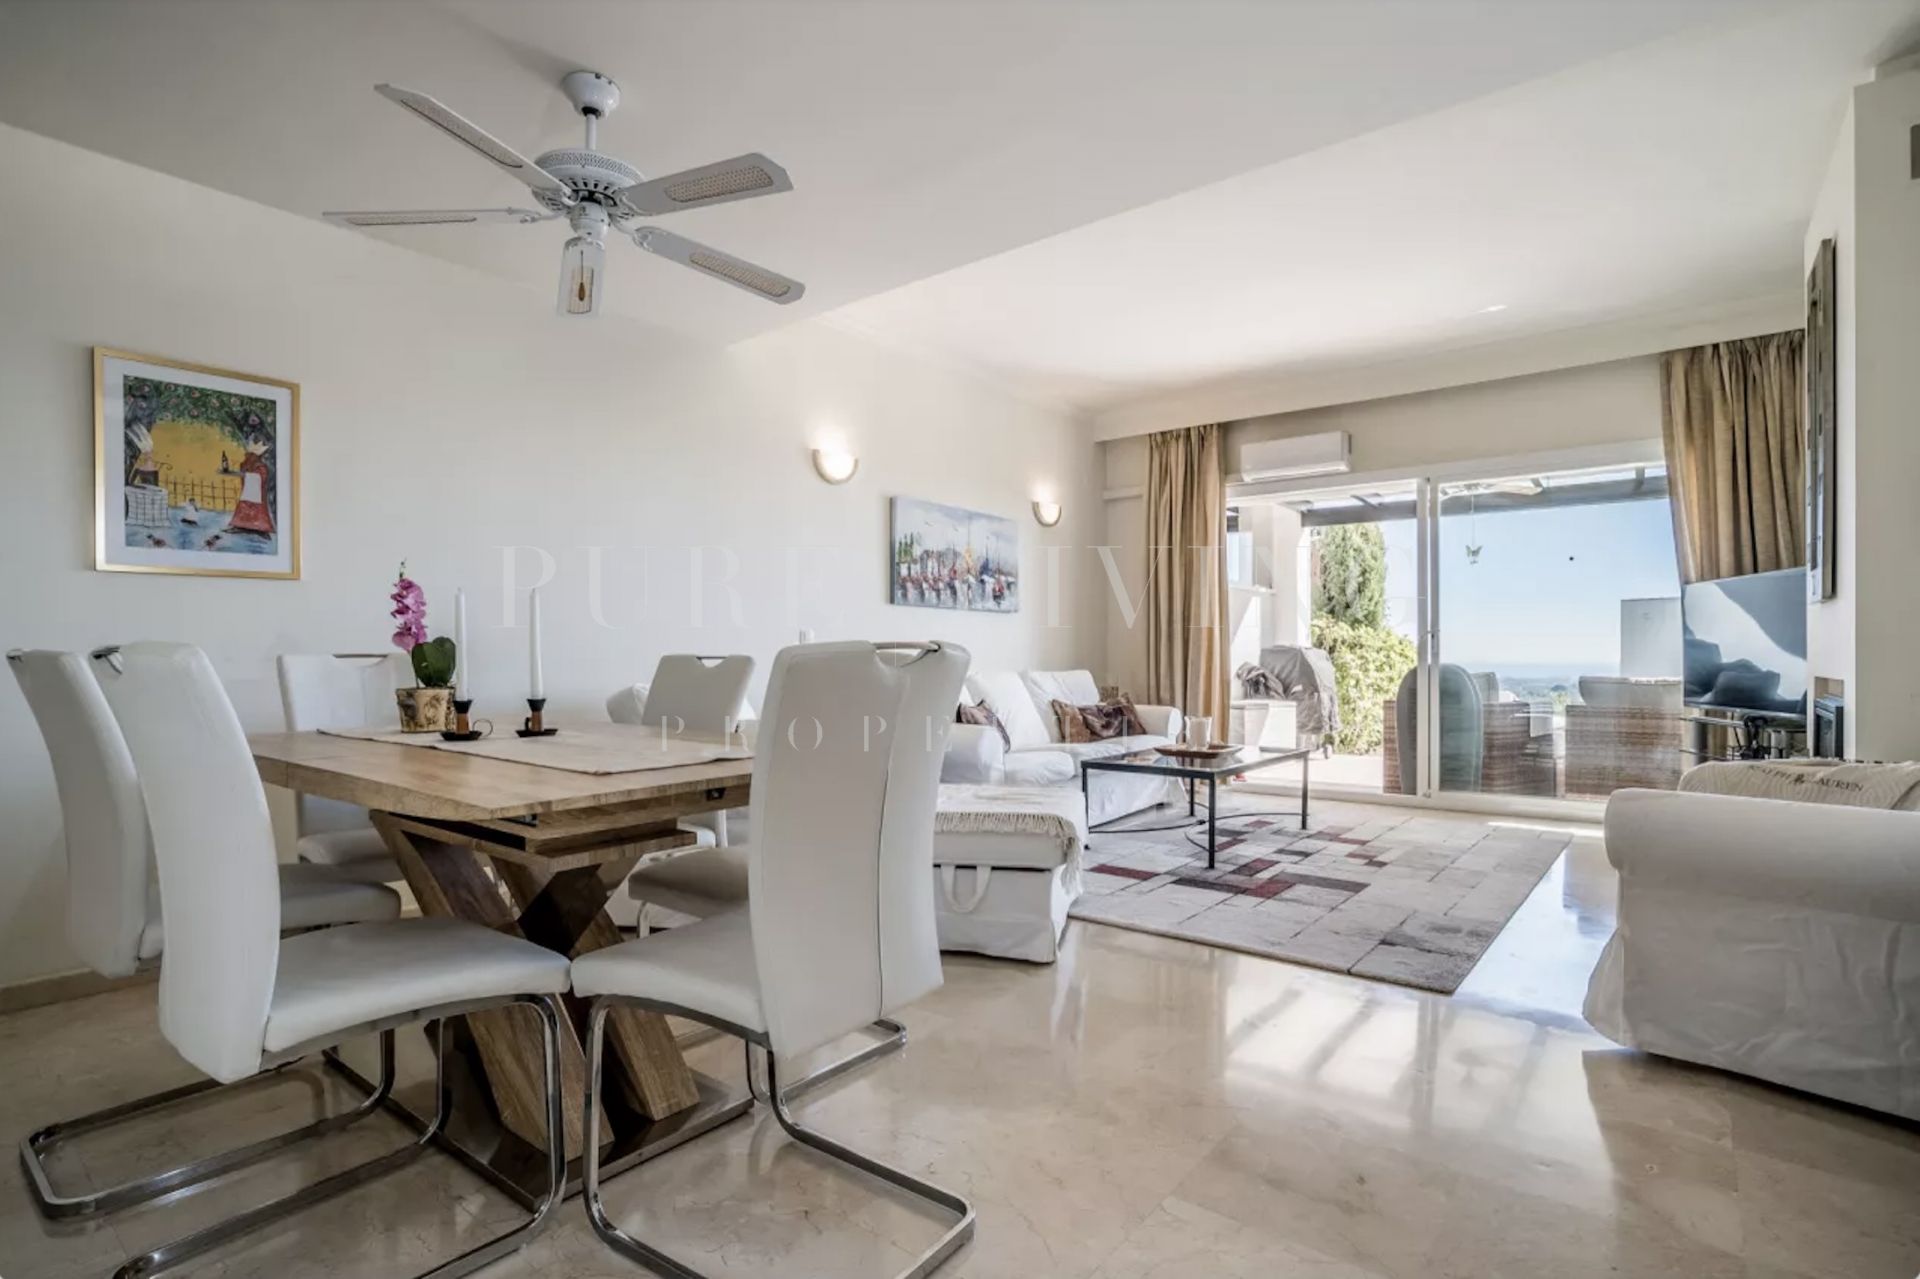 Excepcional apartamento en planta baja con impresionantes vistas al mar situado en La Quinta Village.